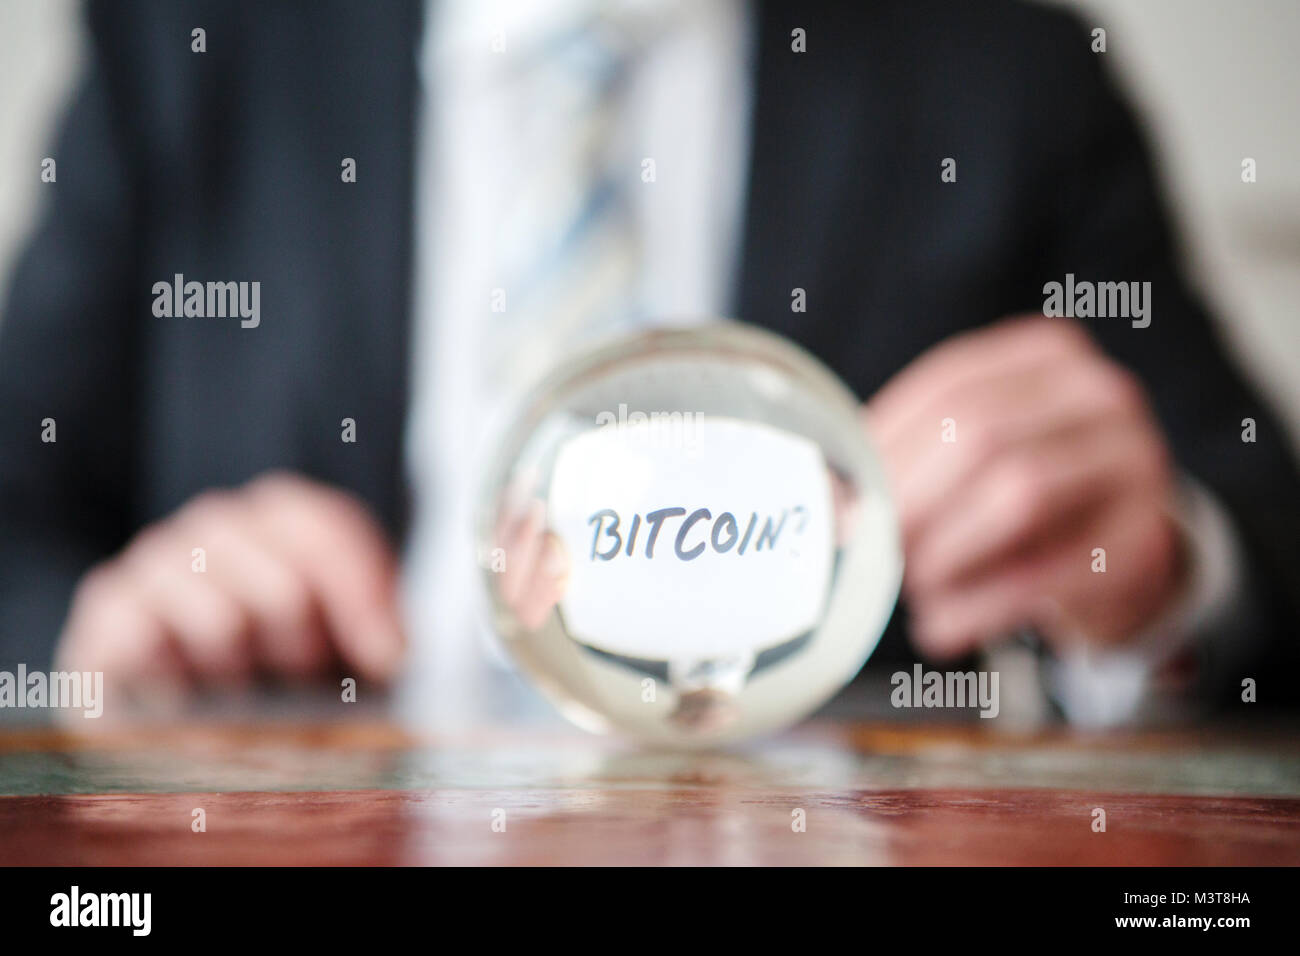 Primo piano dell'uomo tenendo la carta con parola Bitcoin davanti a sfera di vetro Foto Stock